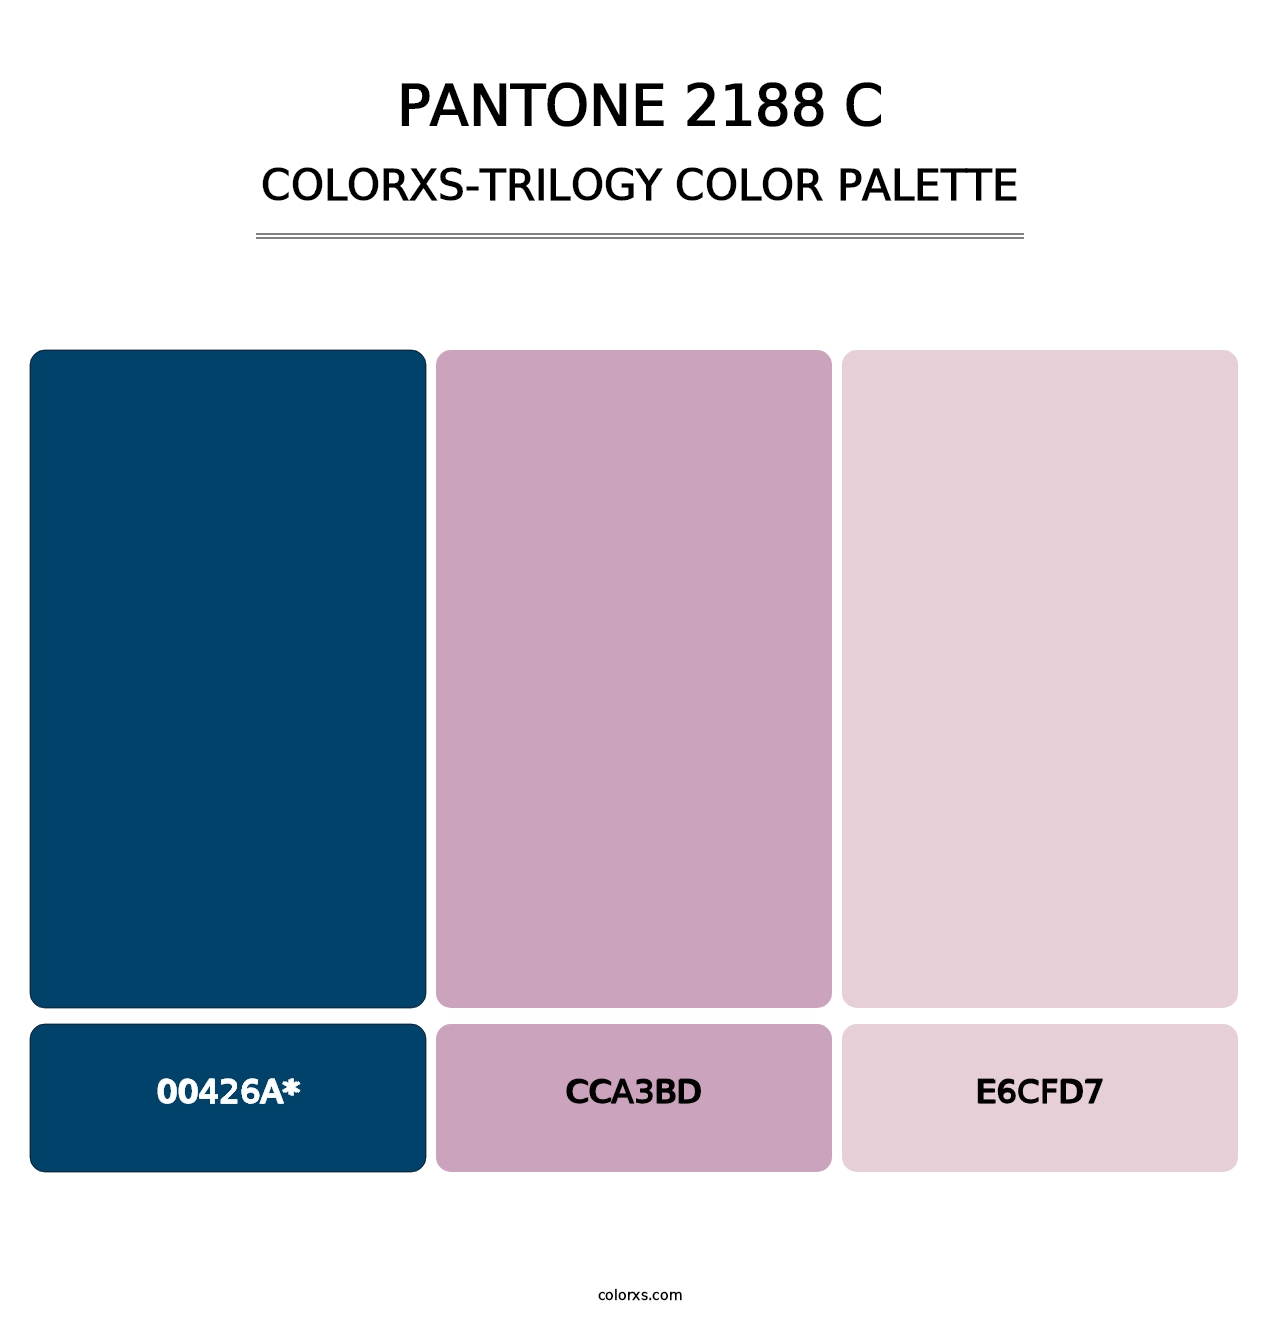 PANTONE 2188 C - Colorxs Trilogy Palette